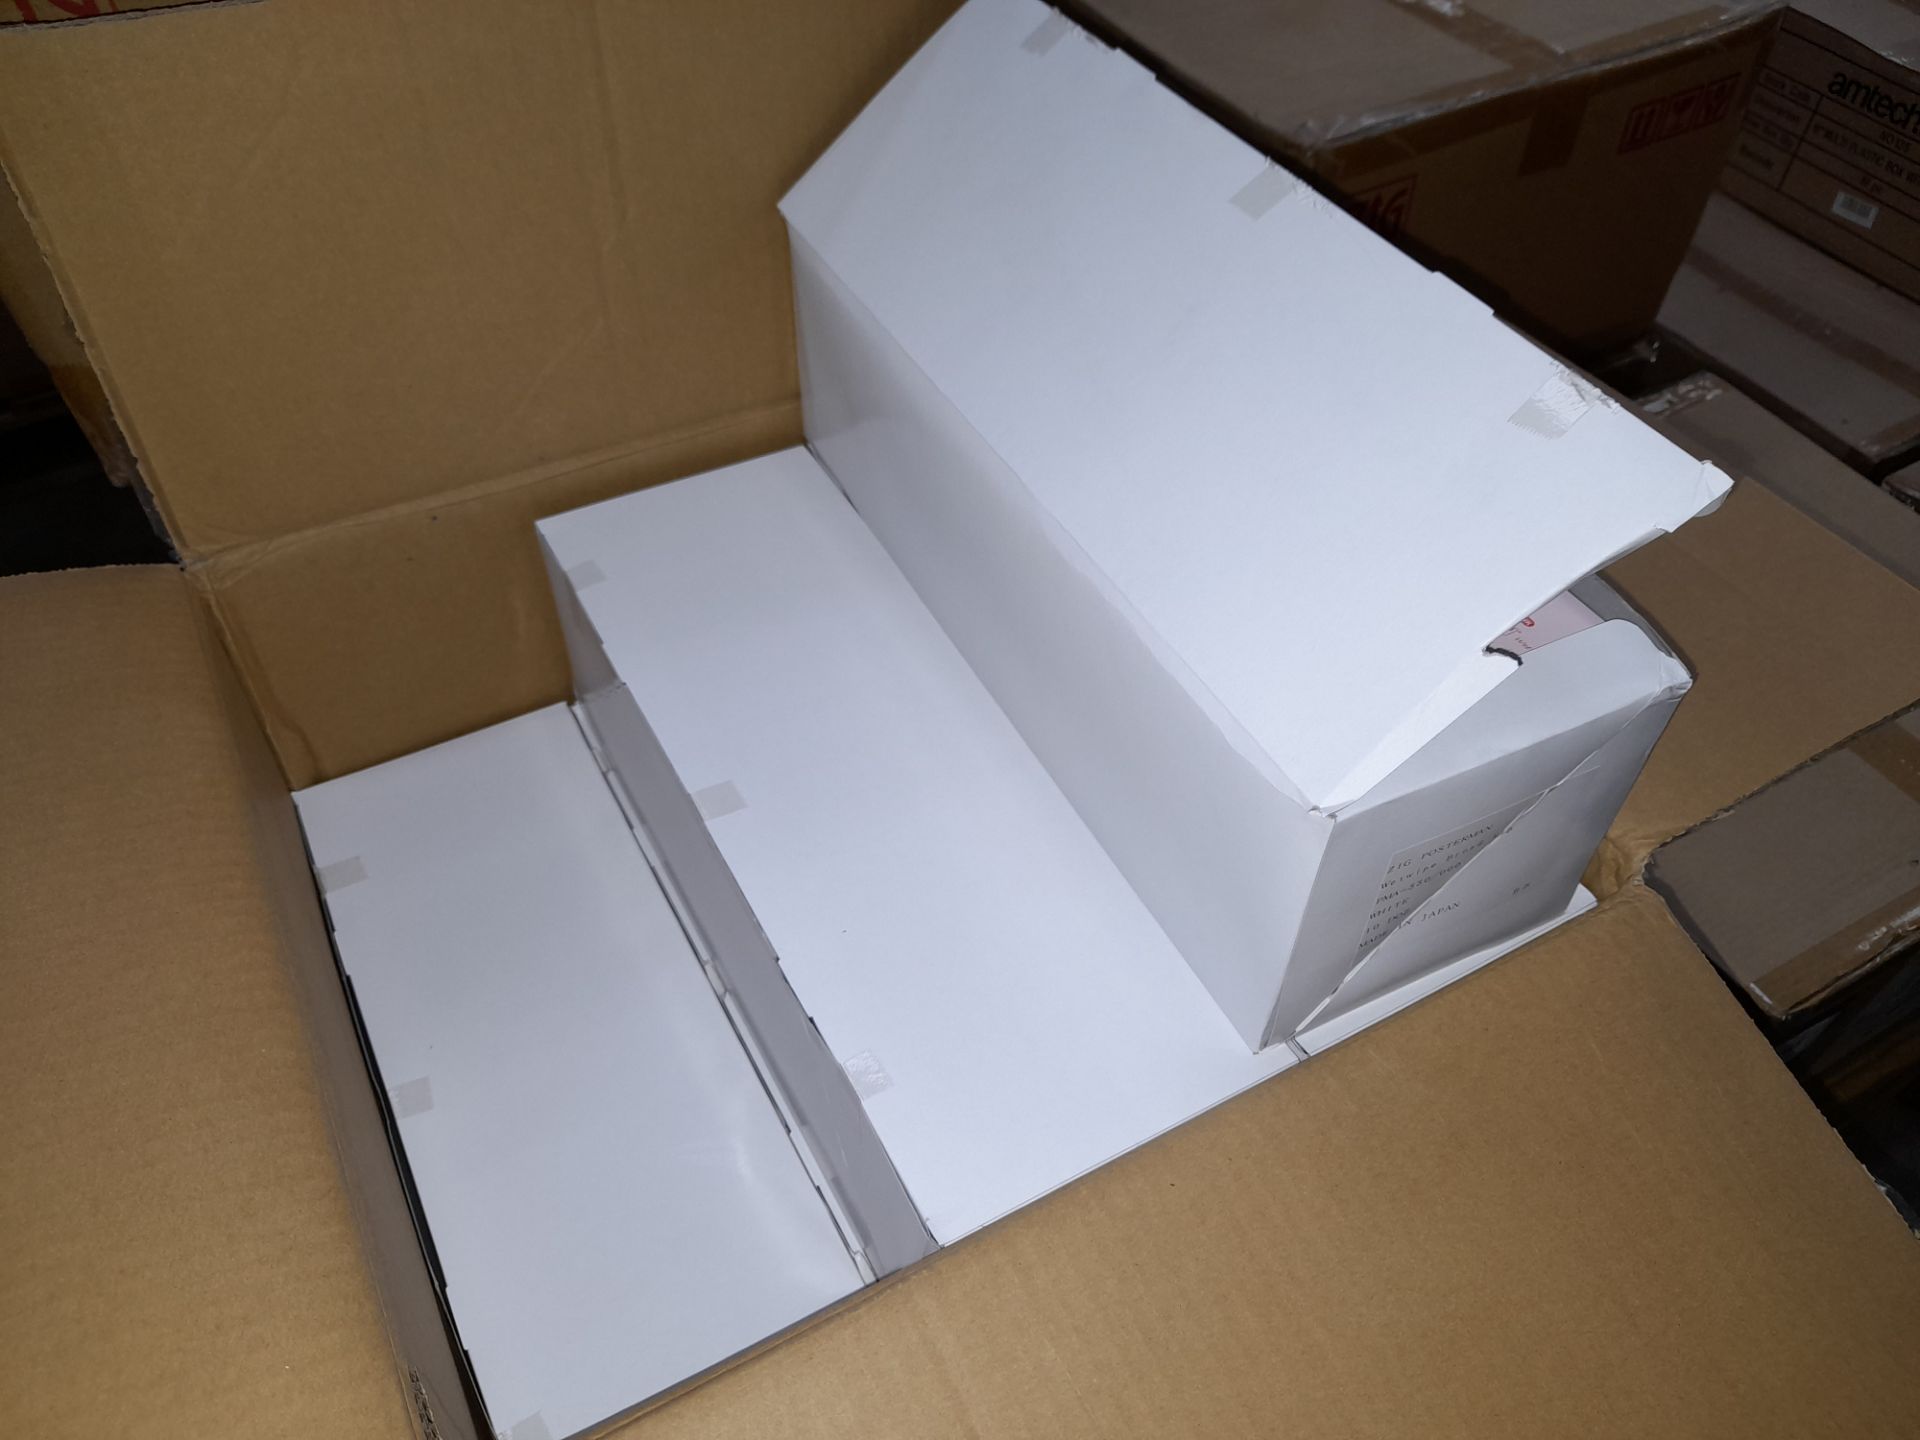 1 x Box of Kuretake Zig Posterman Wet-Wipe White P - Image 2 of 5